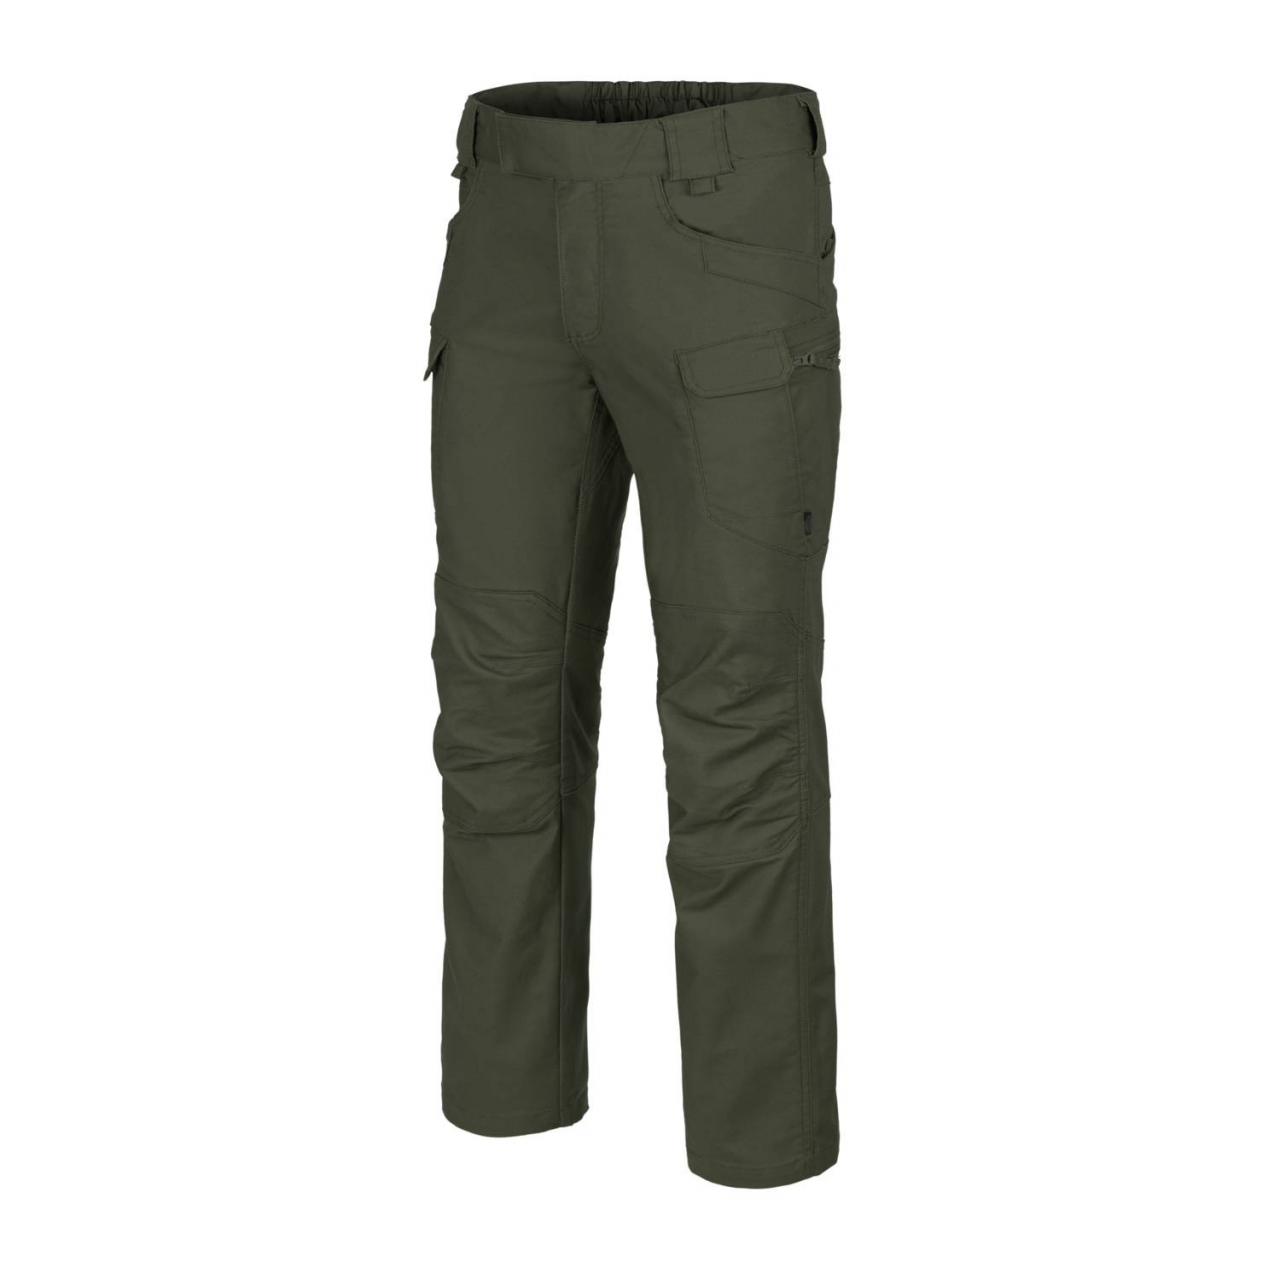 Kalhoty Helikon UTP PolyCotton - tmavě zelené, S